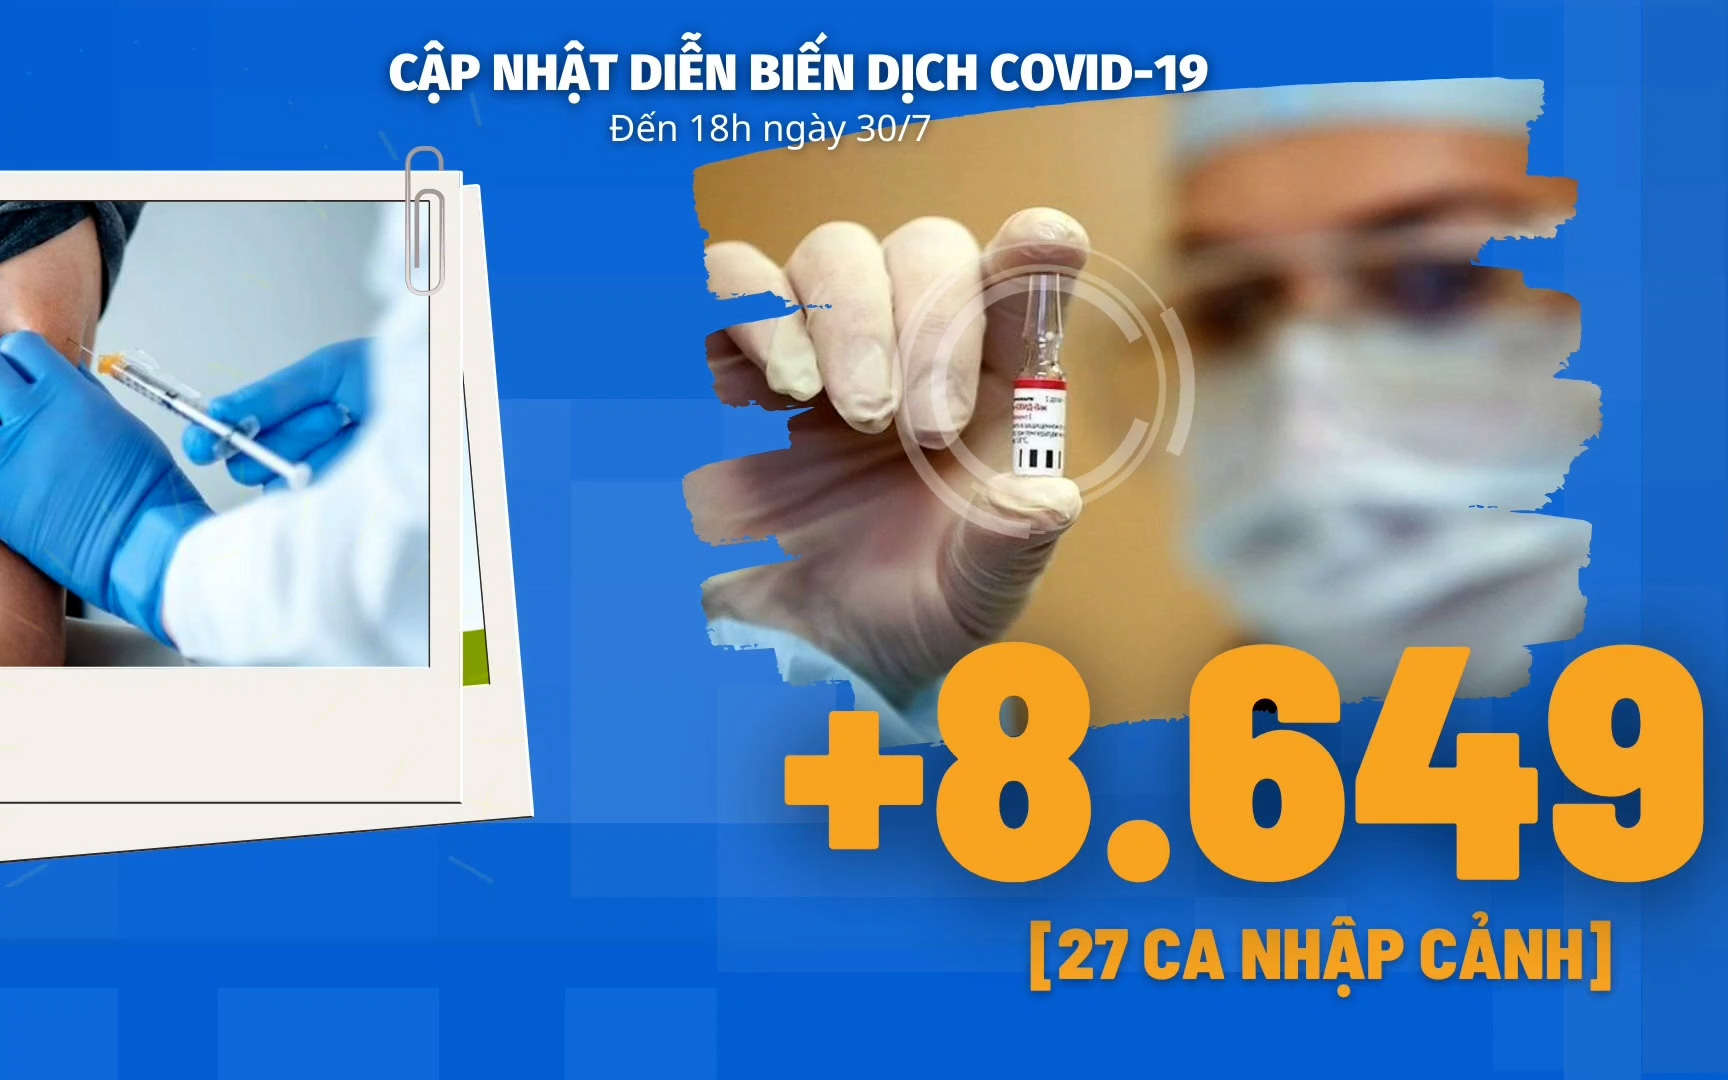 Diễn biến dịch Covid-19 ngày 30/7: Bộ trưởng Bộ Y tế: "Các địa phương phải nâng mức chống dịch lên rất cao"